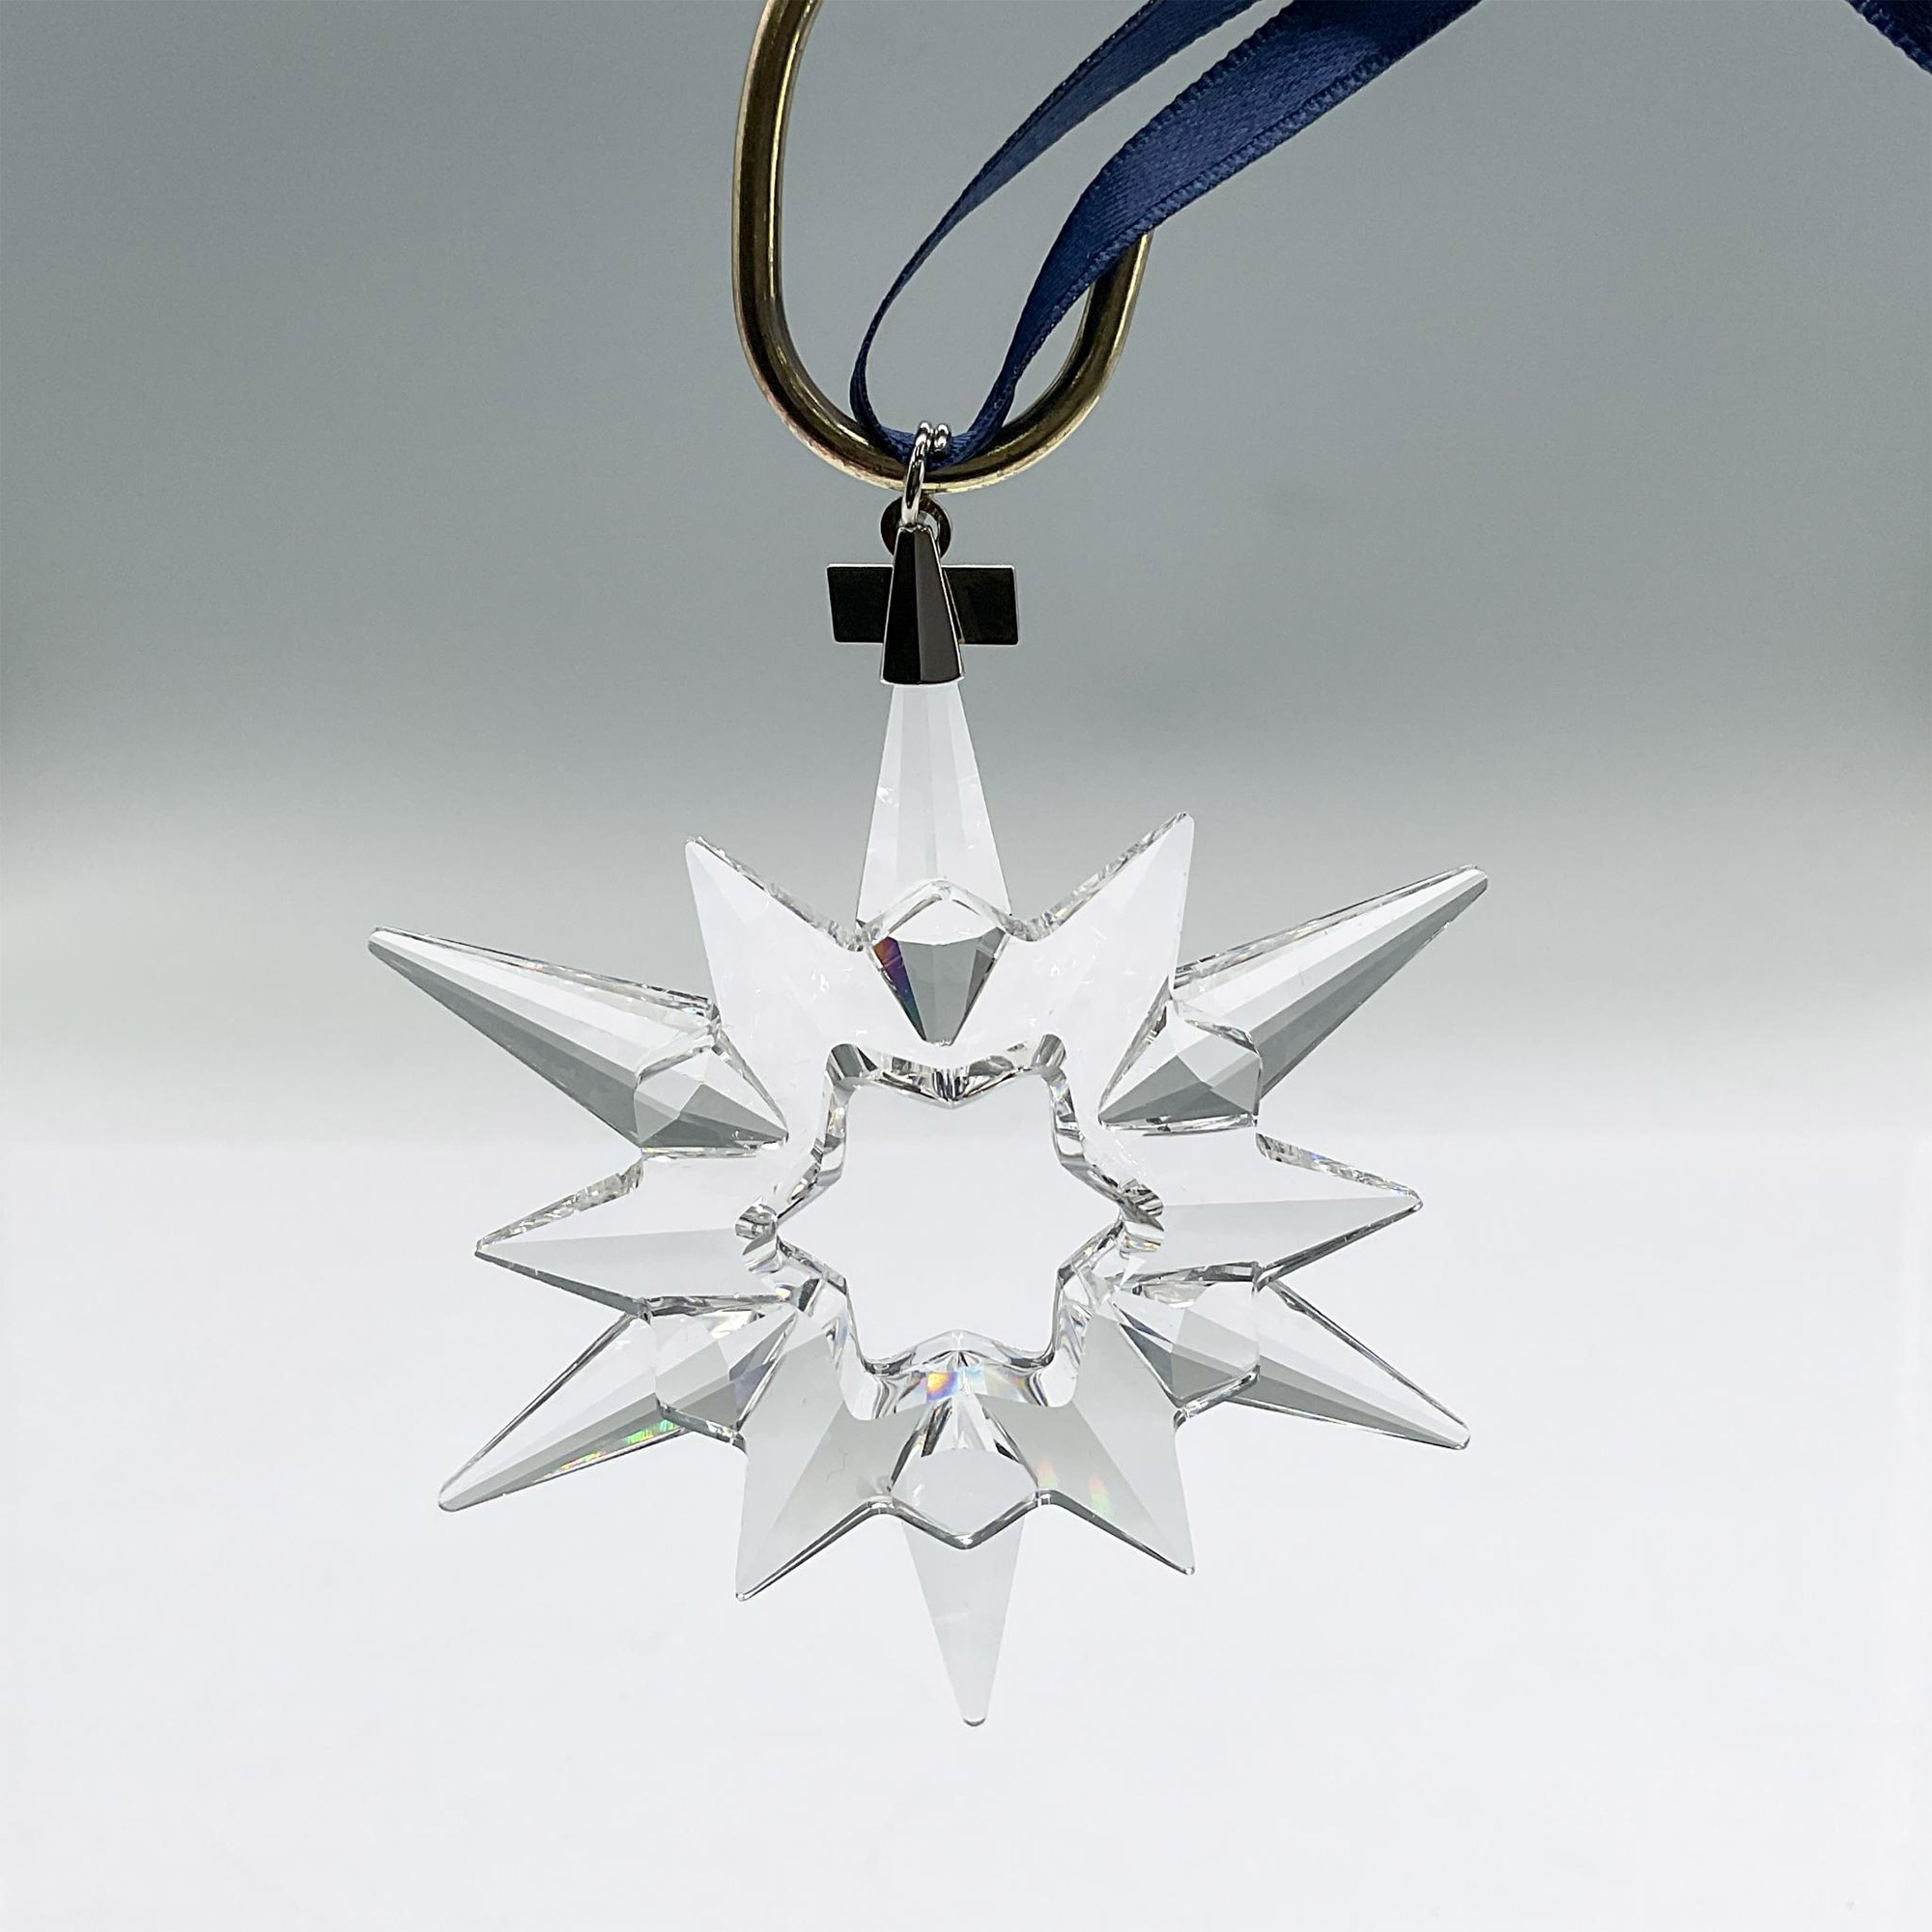 Swarovski Crystal Christmas Ornament 1997 - Image 2 of 3